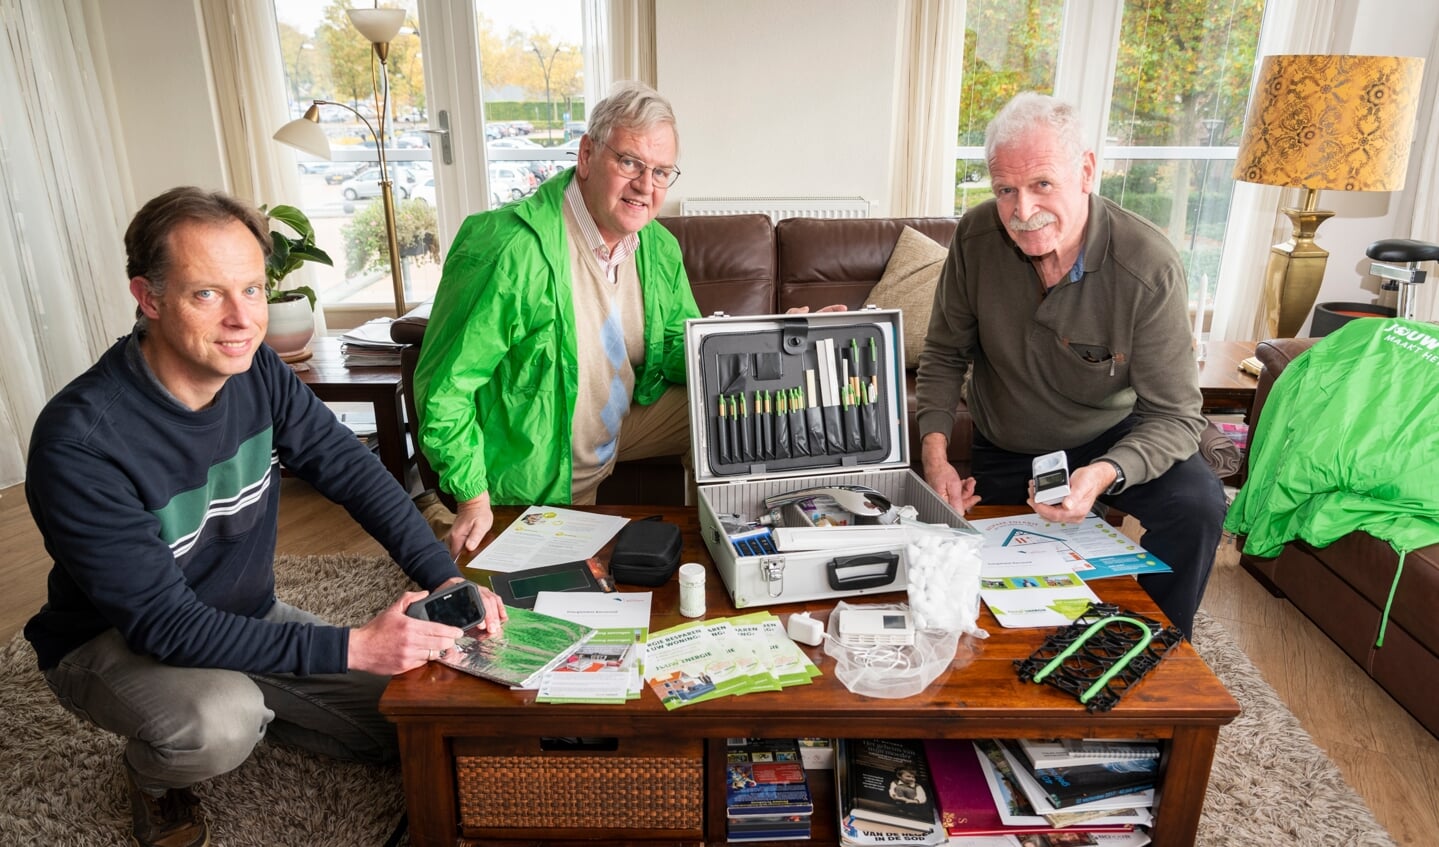 Energieregisseur Catrinus Nouta en energie-ambassadeurs Rijk van Dam en Nico van Maanen laten de inhoud van de 'duurzaamheidskoffer' zien.